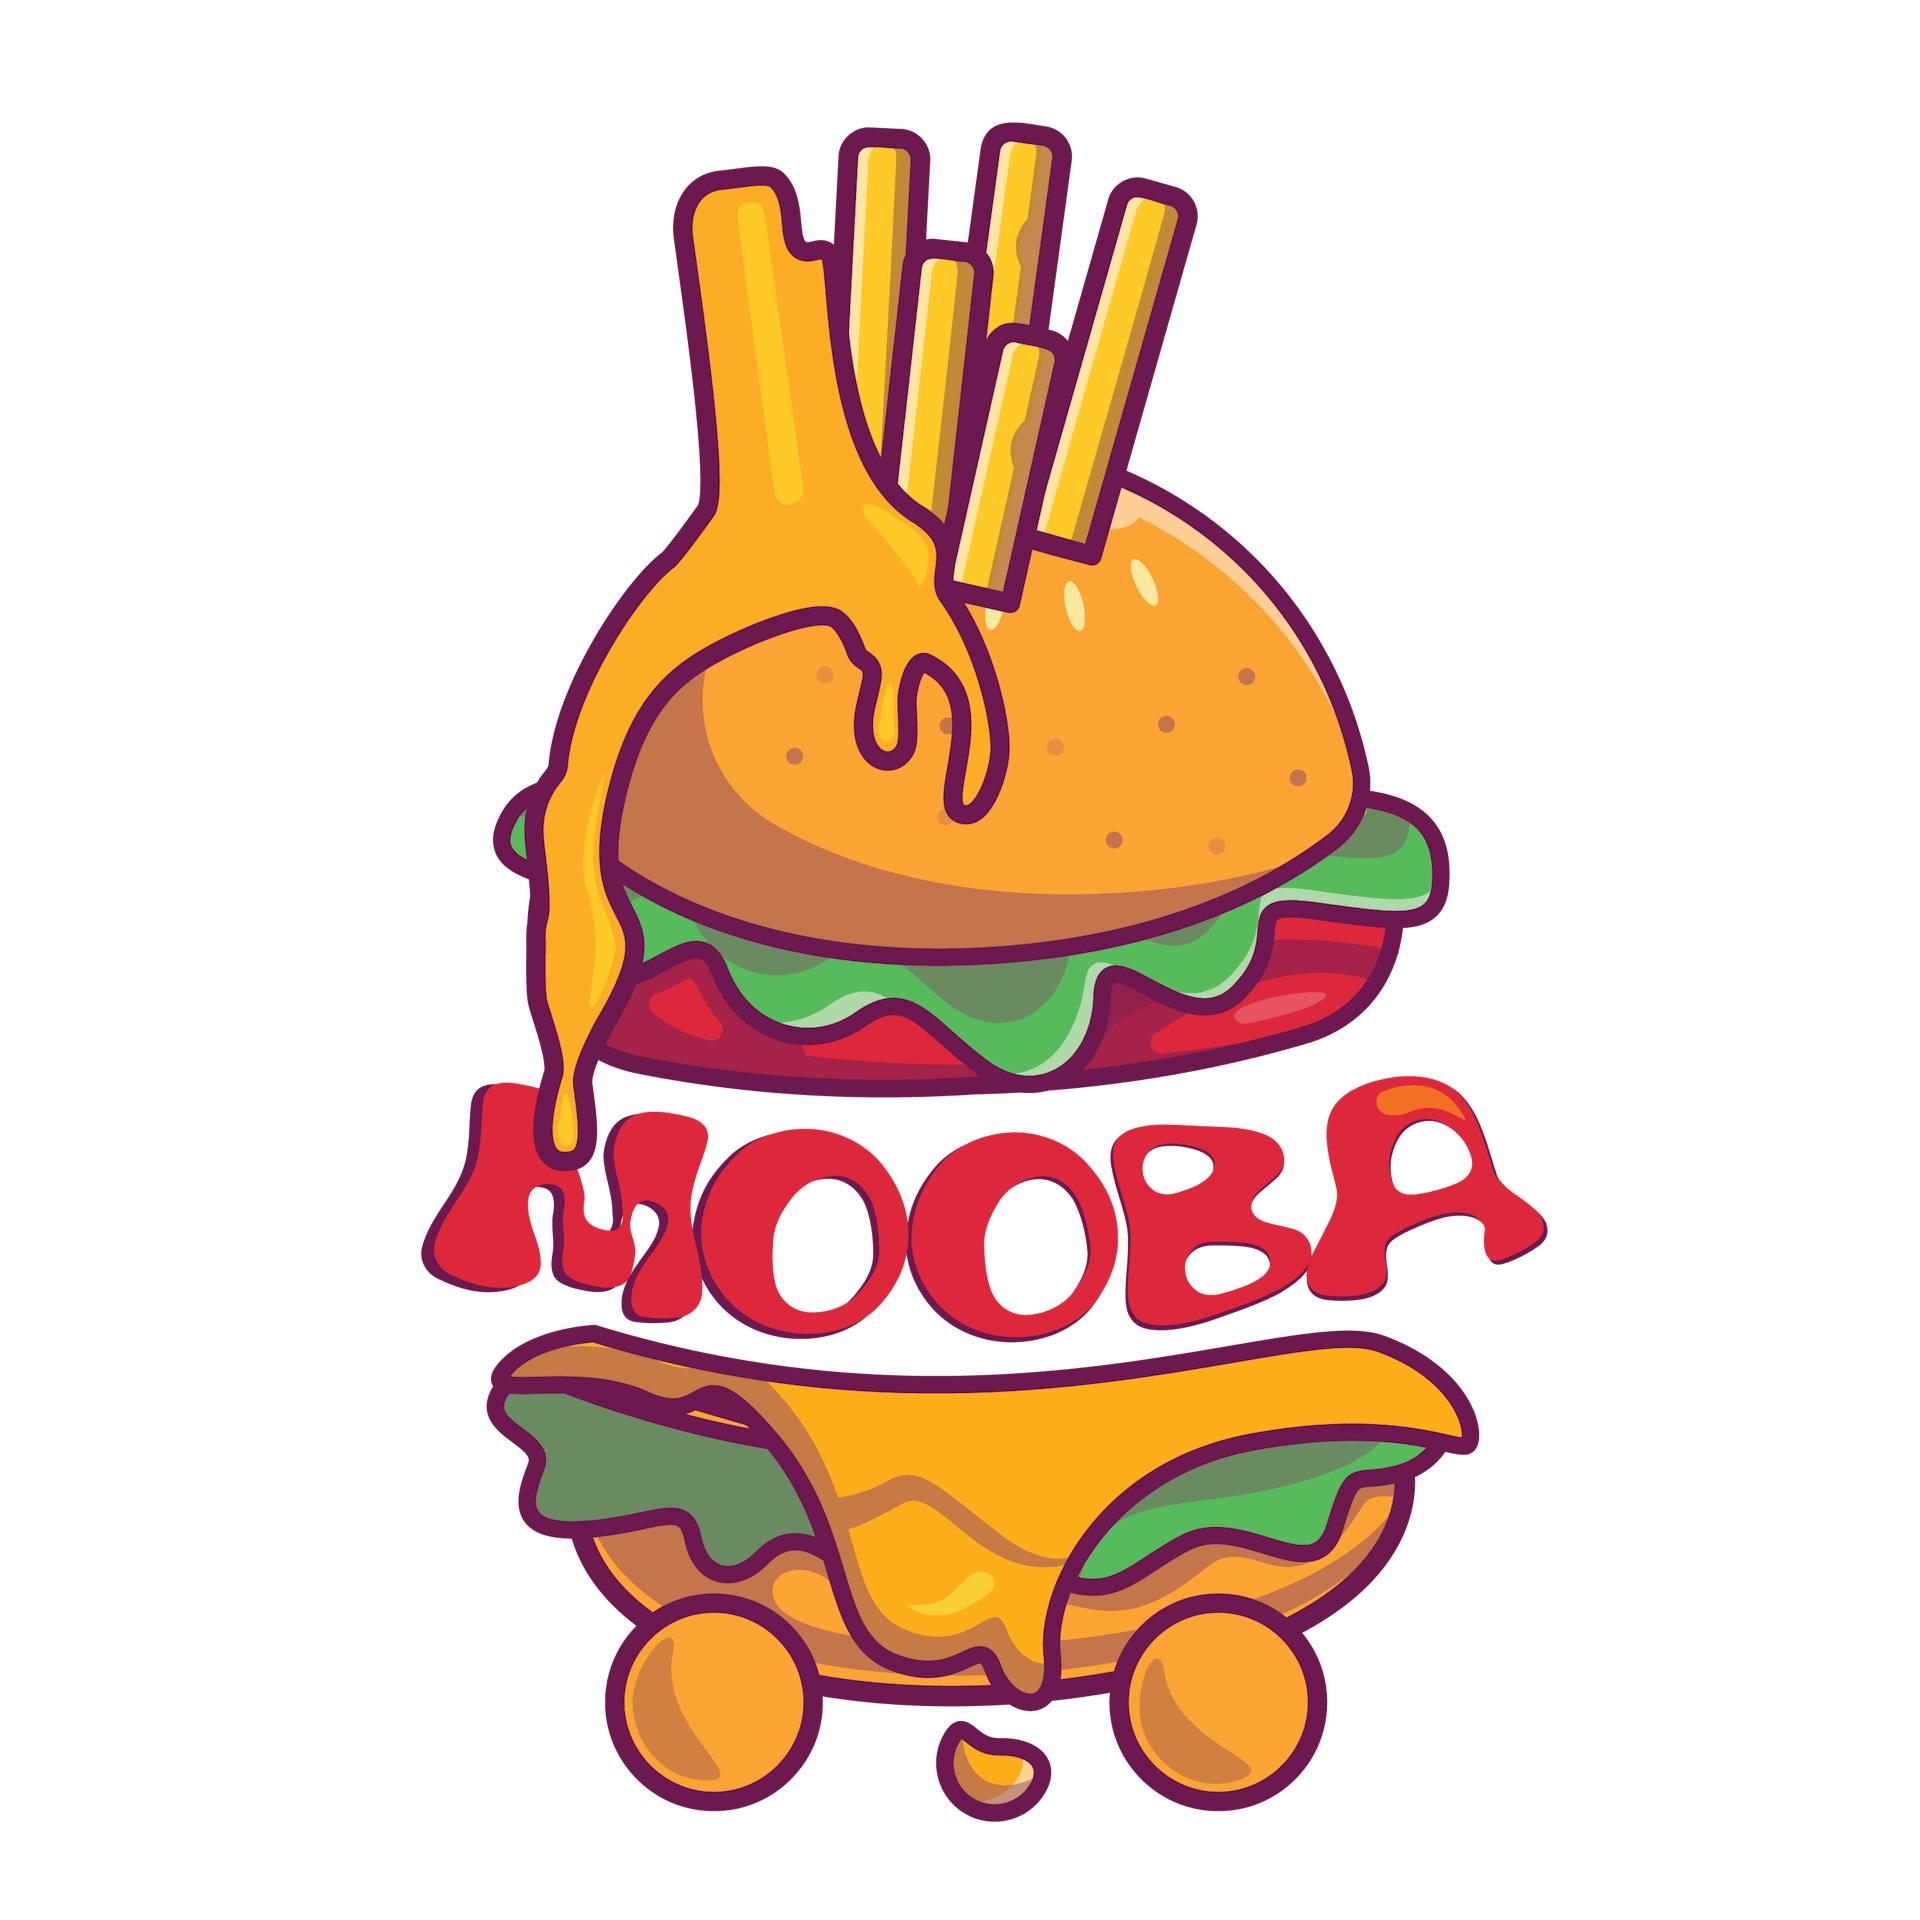 T MOOBA STREET FOOD LOGO-01-01